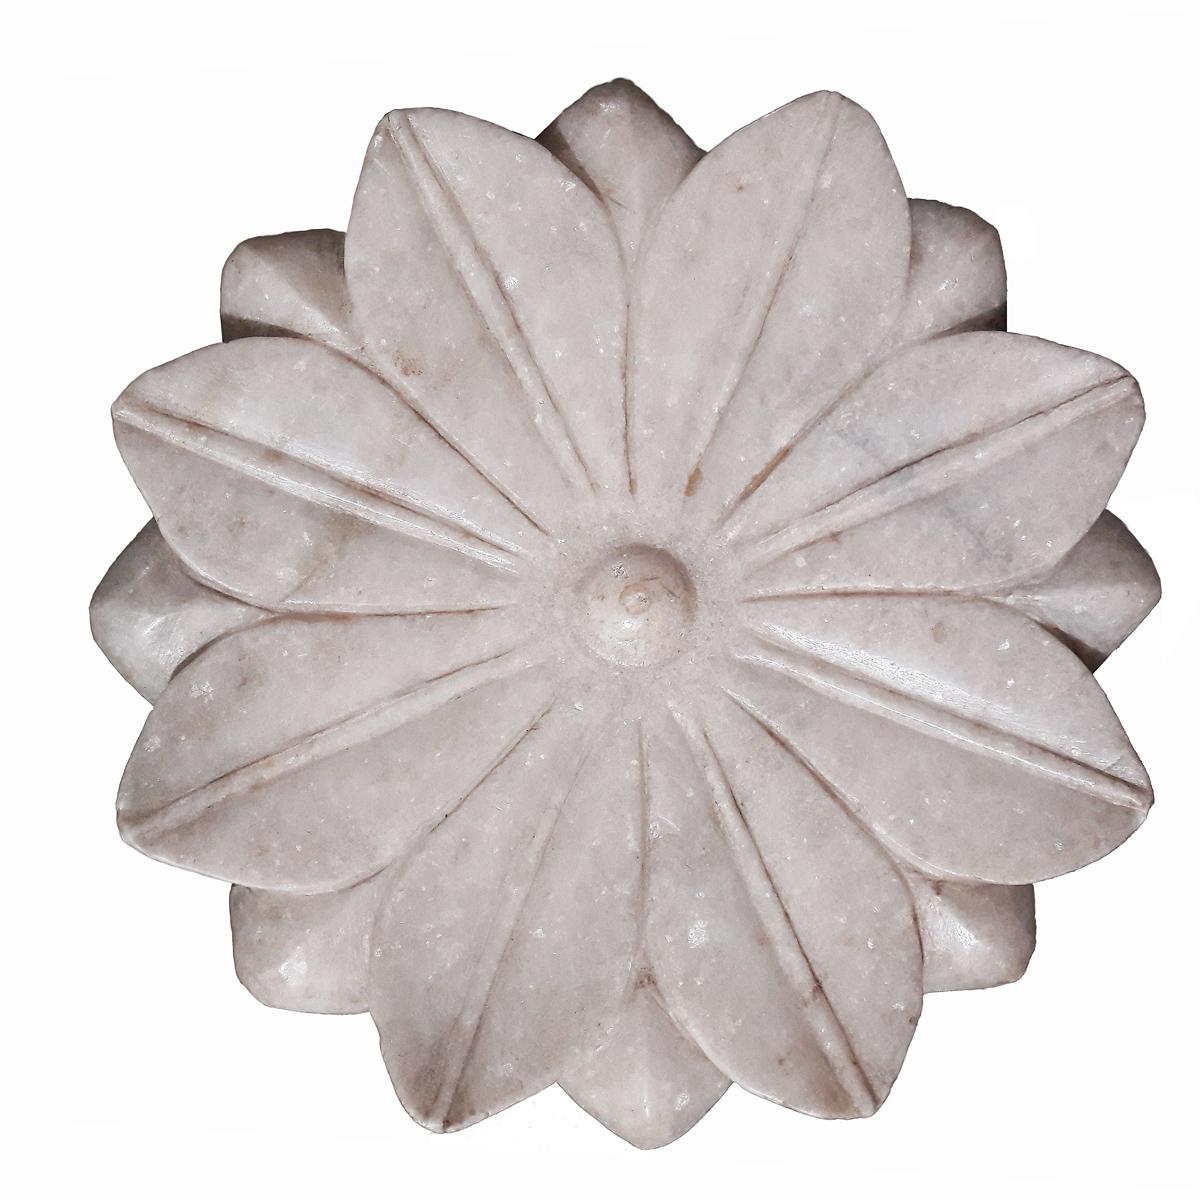 Ein handgeschnitzter Marmorteller aus Indien in Form einer Lotusblume, um 1960.
Die natürlichen Einschlüsse im Stein verleihen diesem Stück einen einzigartigen, schillernden Glanz. Ideal als Akzent für jede Konsole, jeden Beistelltisch, Couchtisch